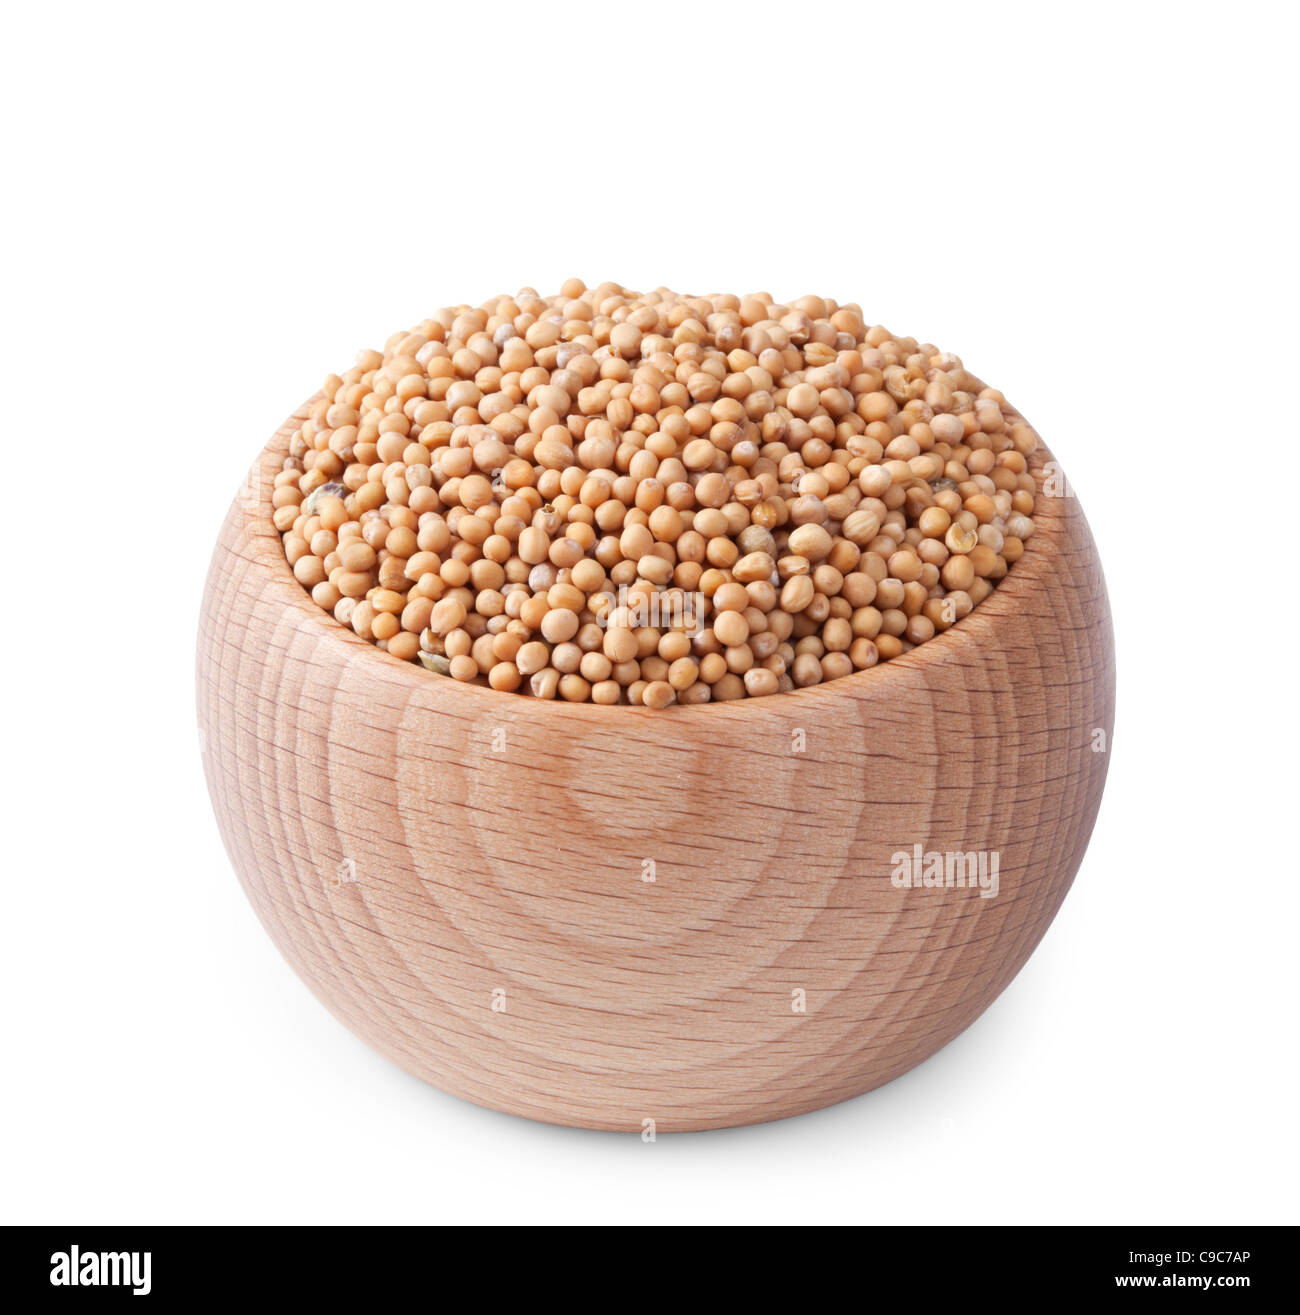 Ciotola di legno pieno di semi di senape isolati su sfondo bianco Foto Stock